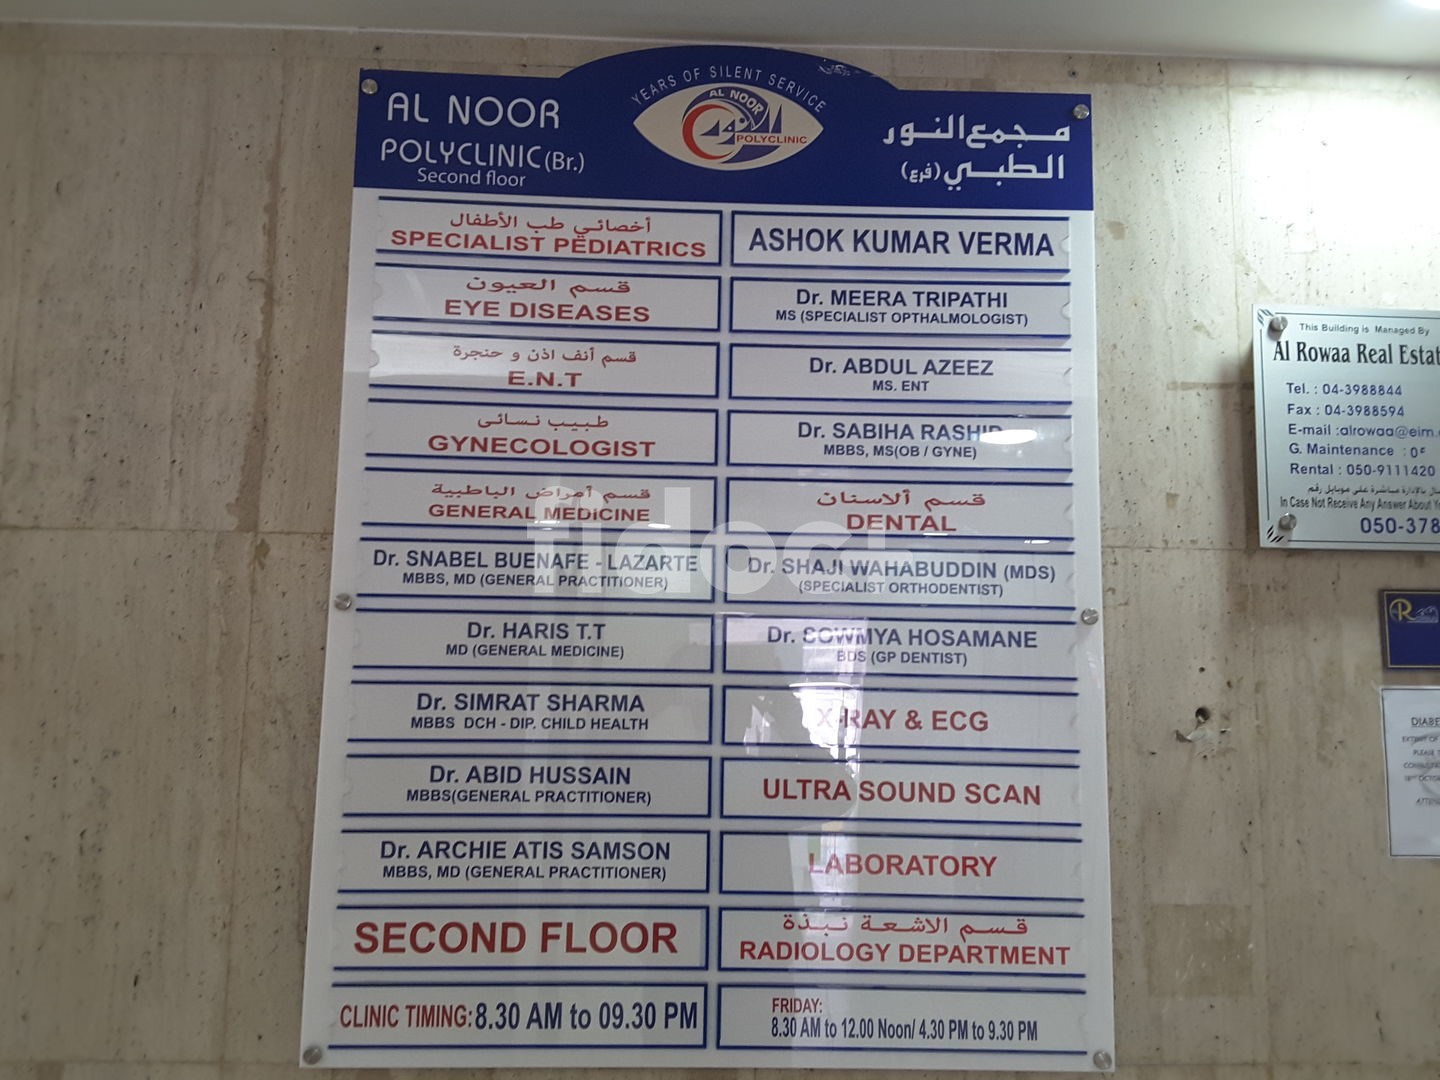 Al Noor Polyclinic, Dubai